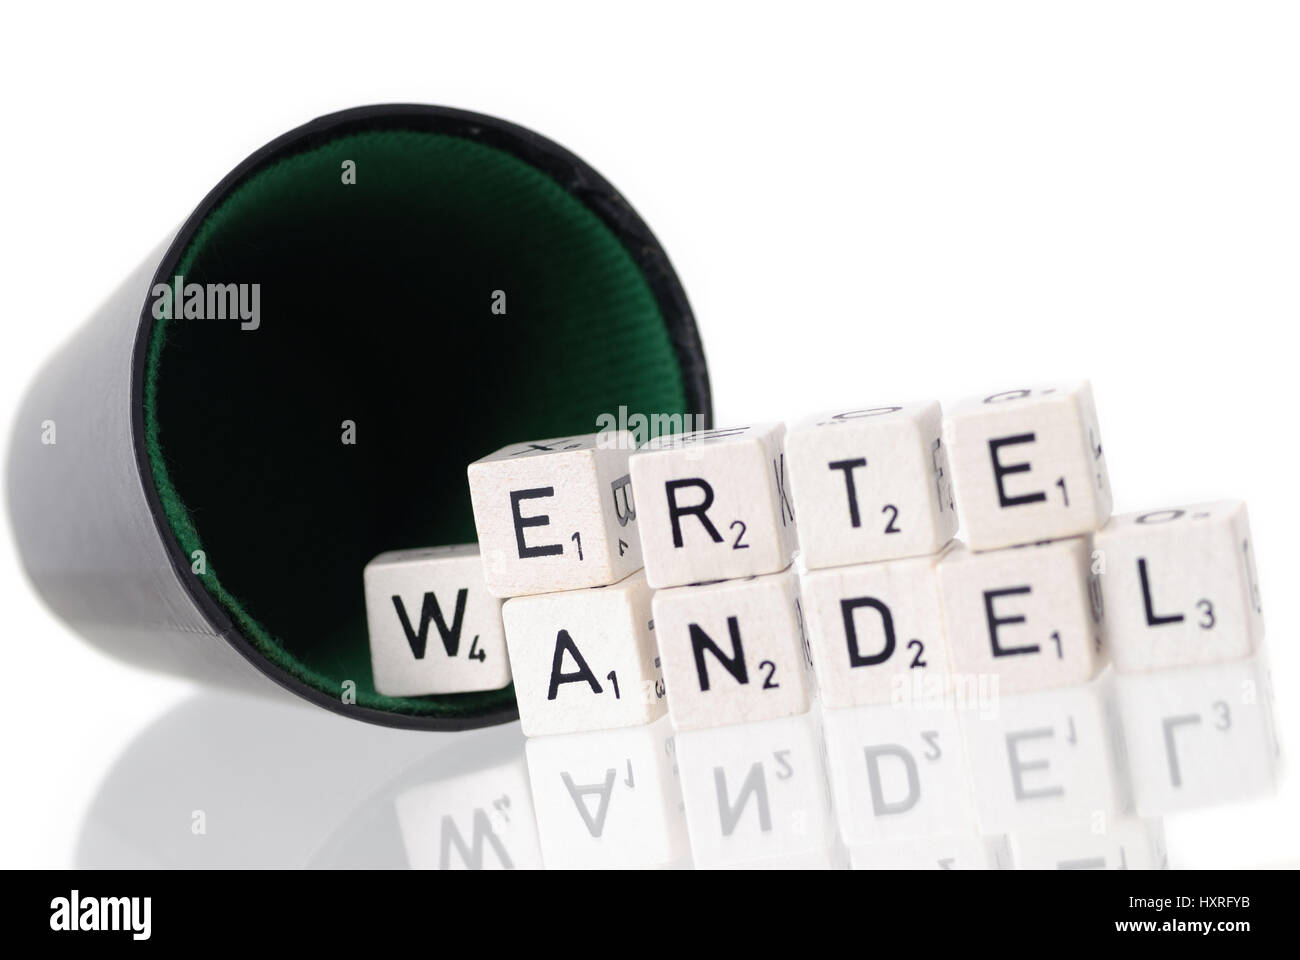 Dice cup with letter cube, stroke value change, Würfelbecher mit Buchstabenwürfel, Schriftzug Wertewandel Stock Photo